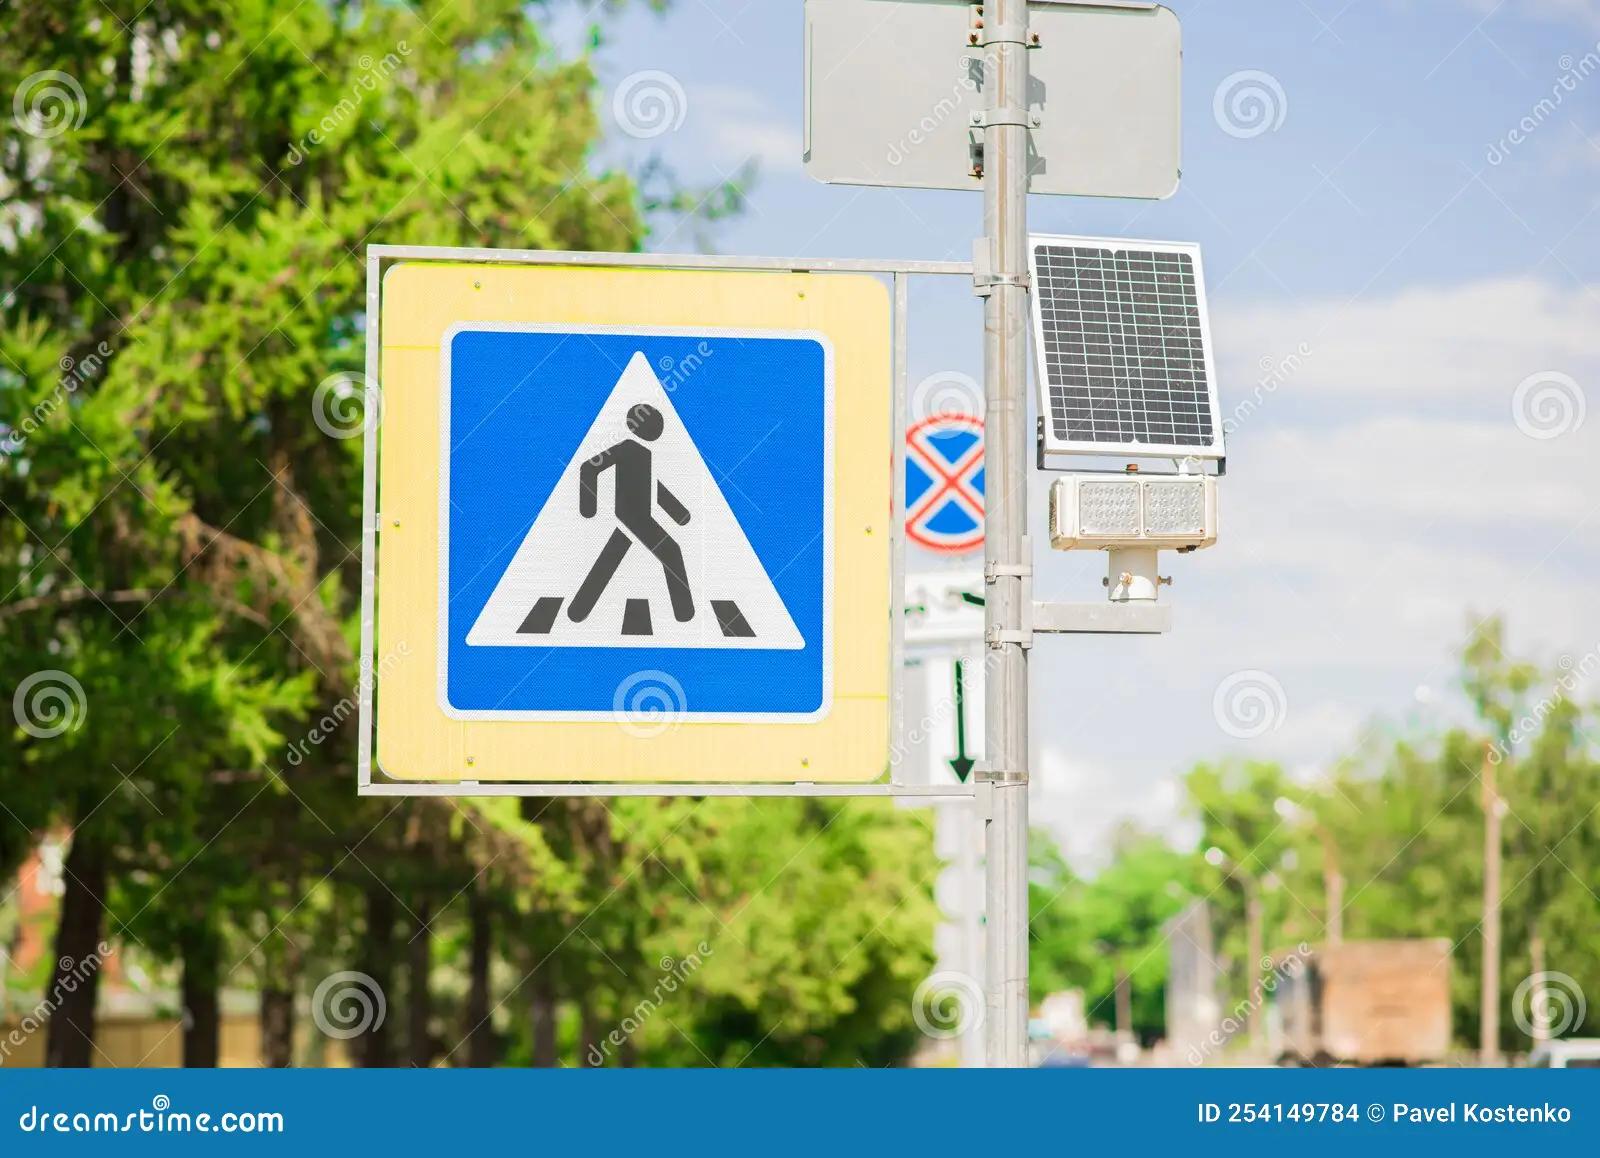 paso peatones placa solar - Qué significa la señal de paso de peatones